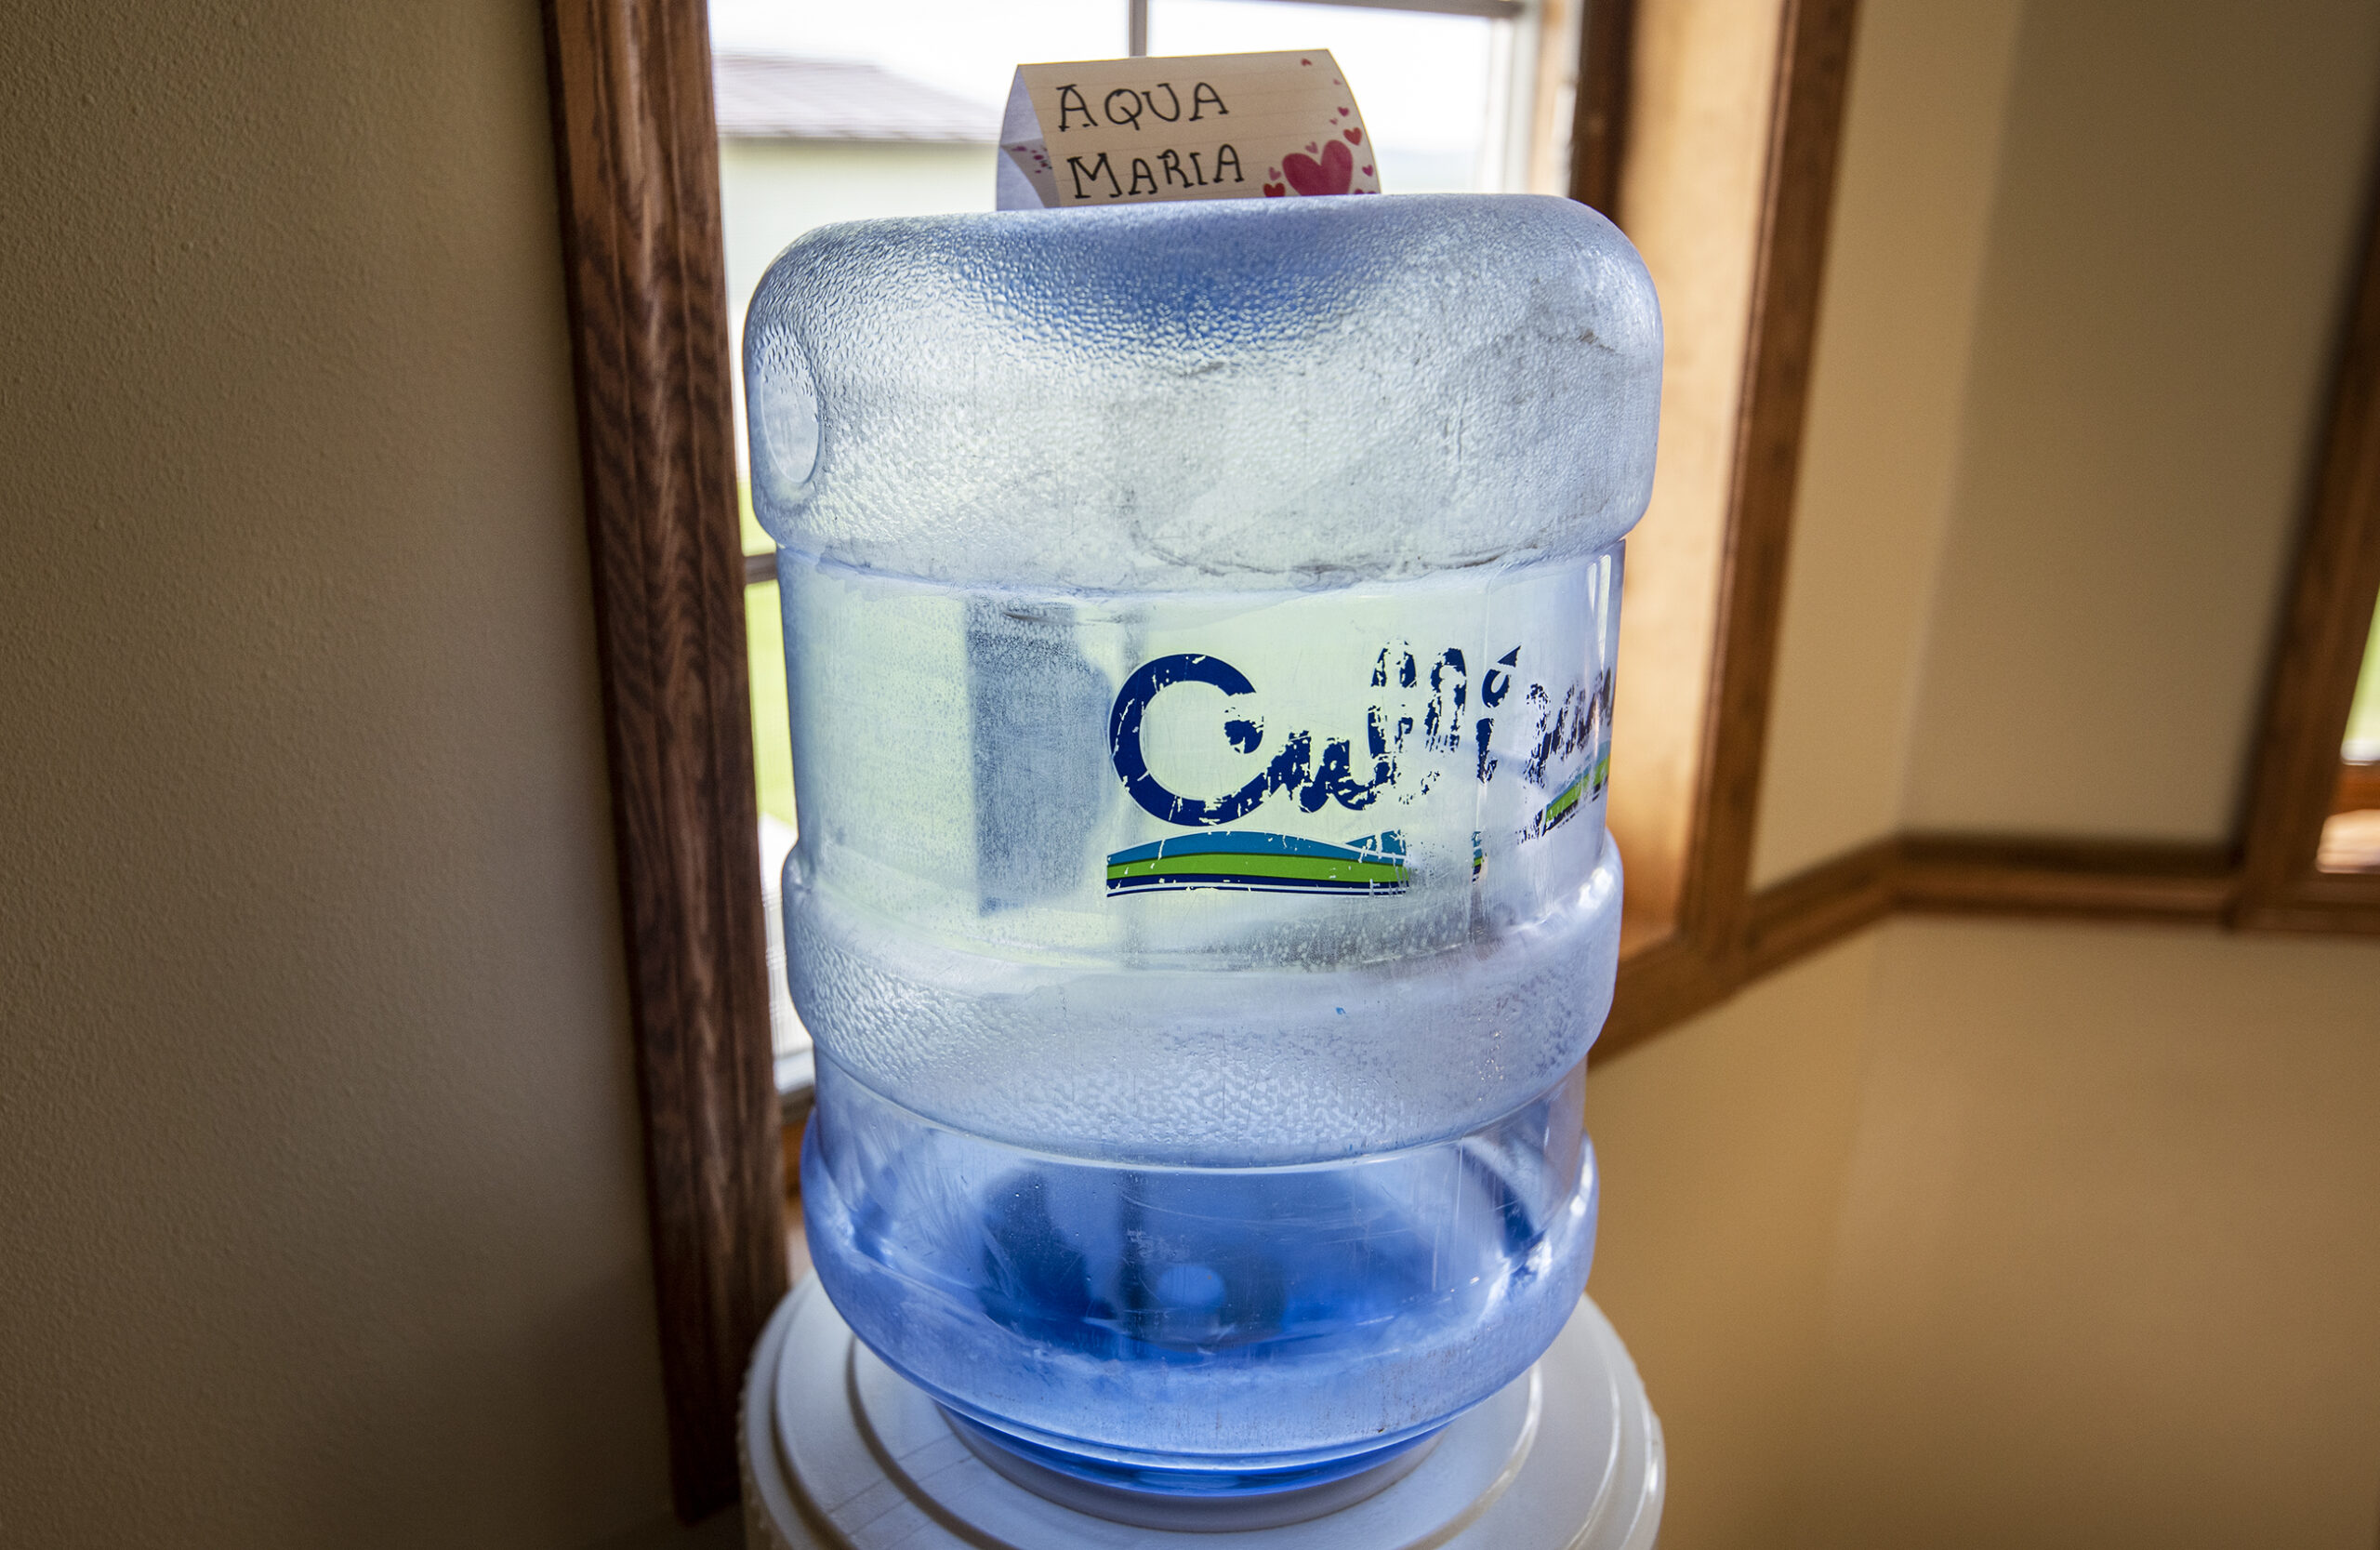 A Culligan jug has a homemade sign that says "Aqua Maria" on top of it.